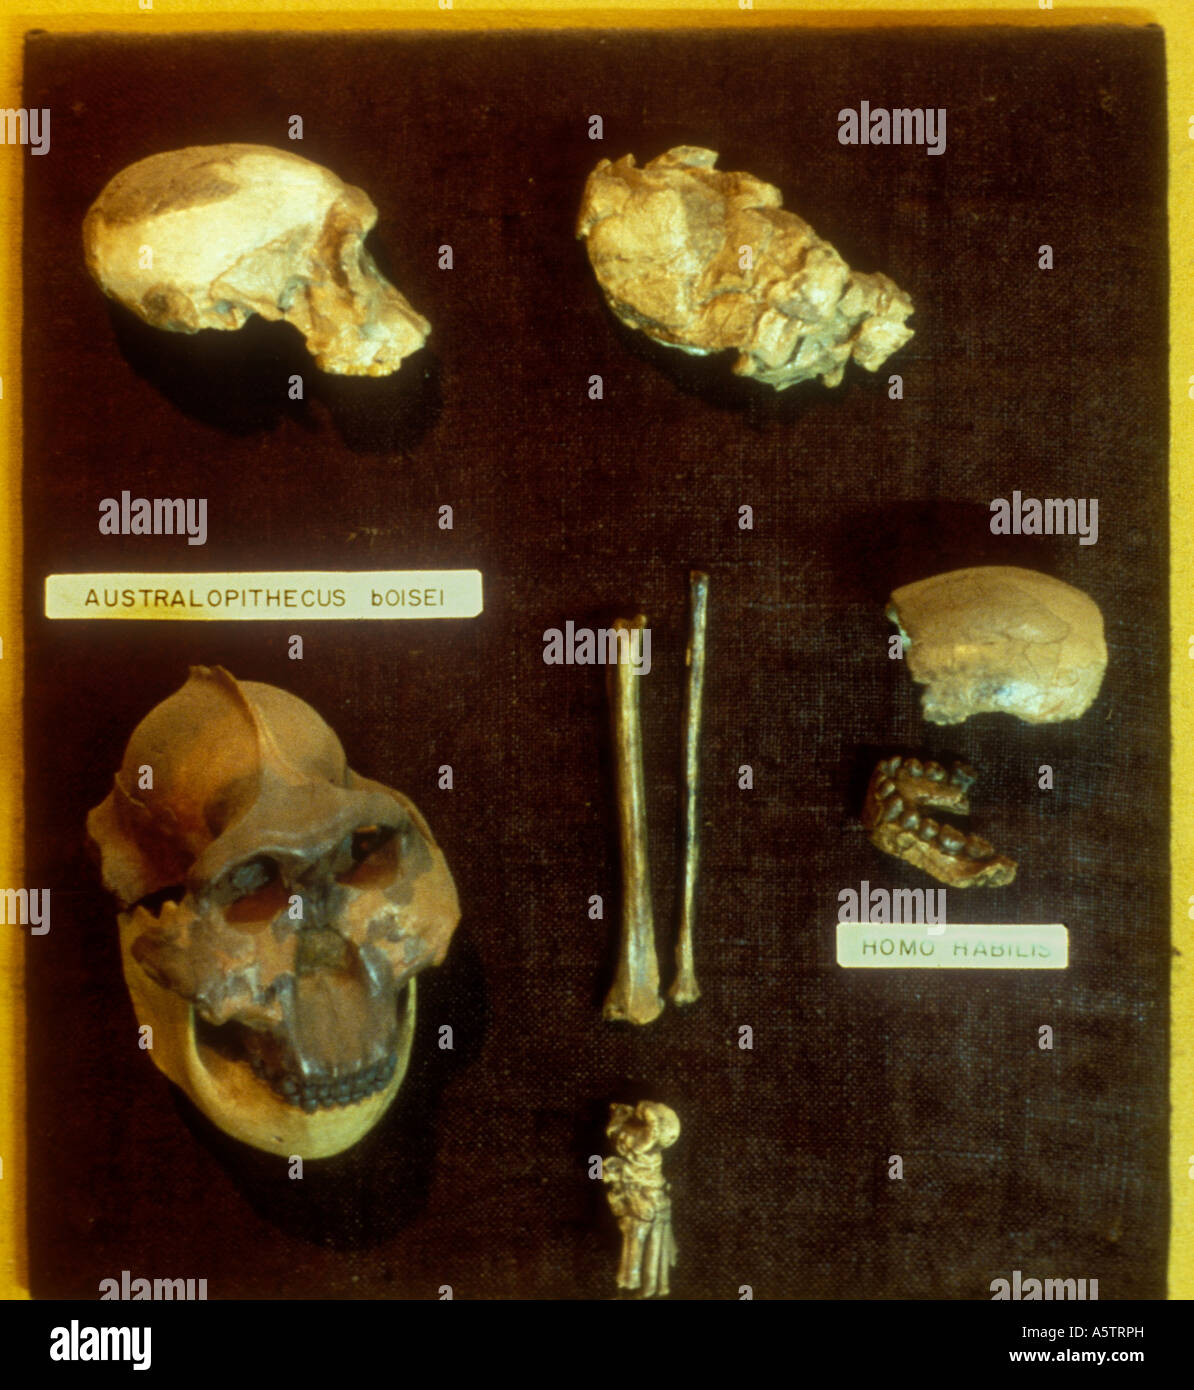 L'australopithecus BOISEI et d'Homo habilis combustibles expositions Musée National de Nairobi Kenya Afrique de l'Est Banque D'Images